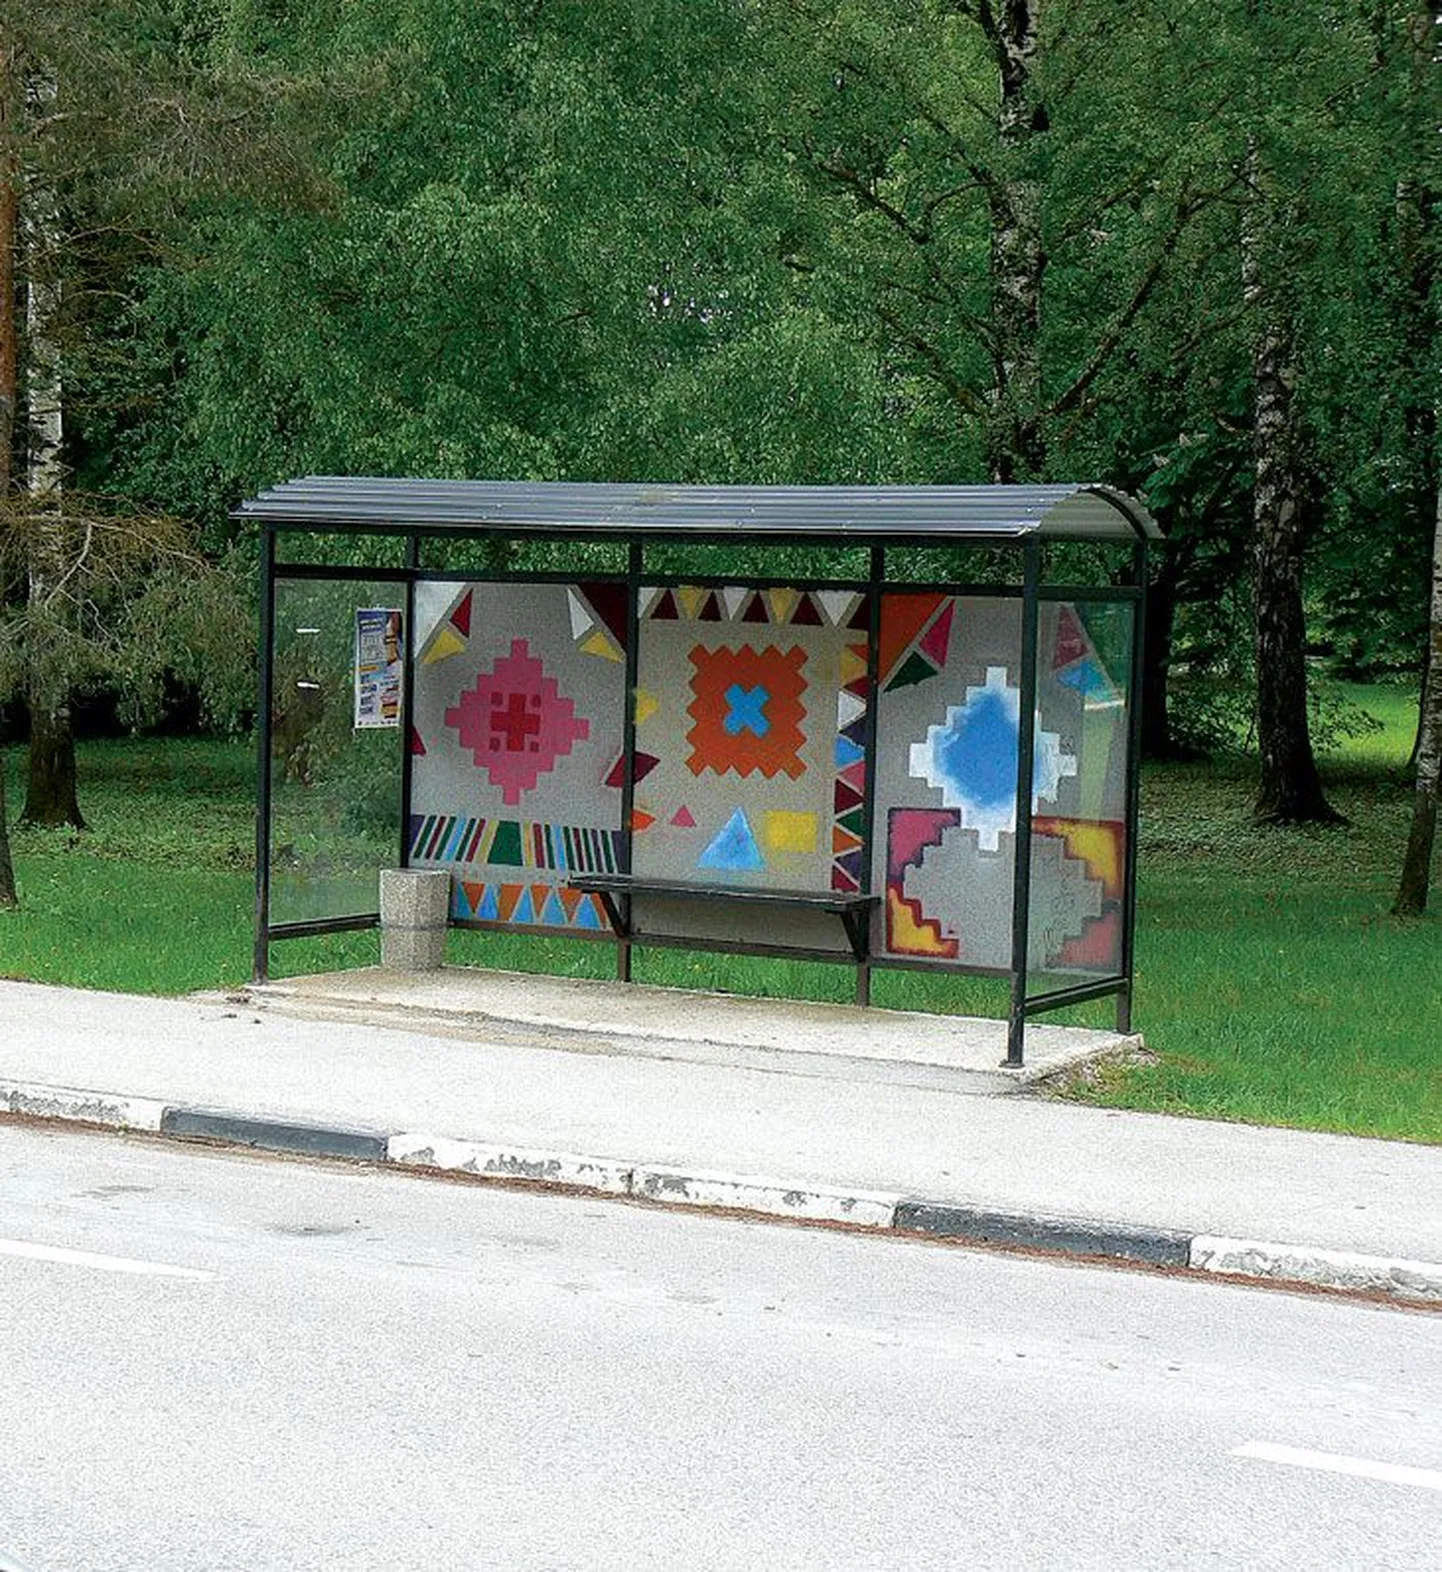 Kindakirjaliseks värvitud Puhja bussipaviljon.